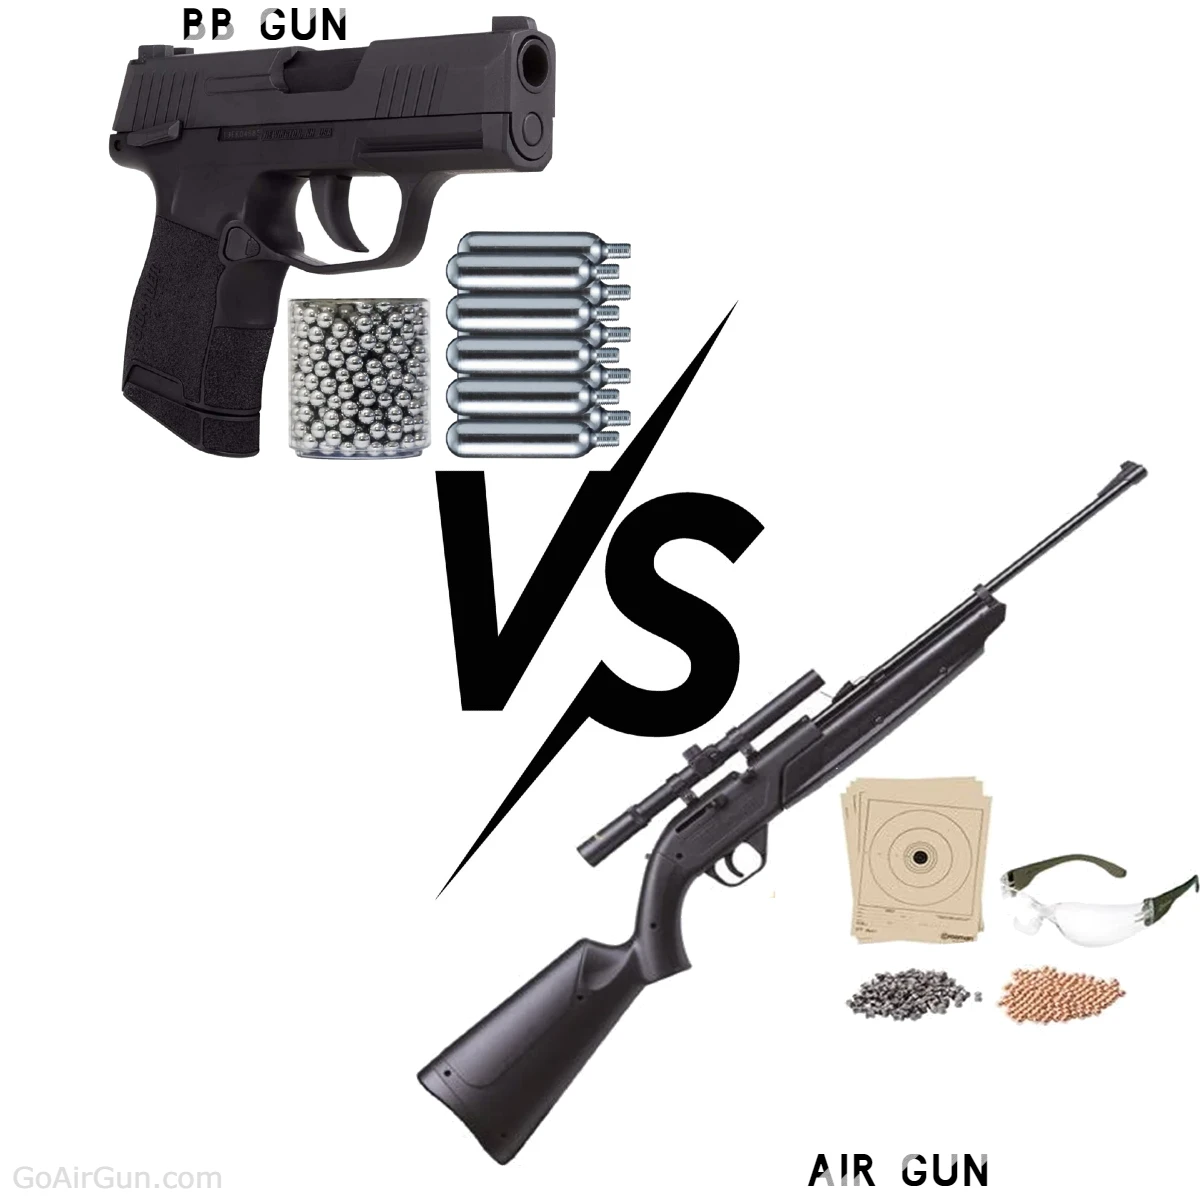 BB Gun vs. Air Gun: Choose the Right Firearm